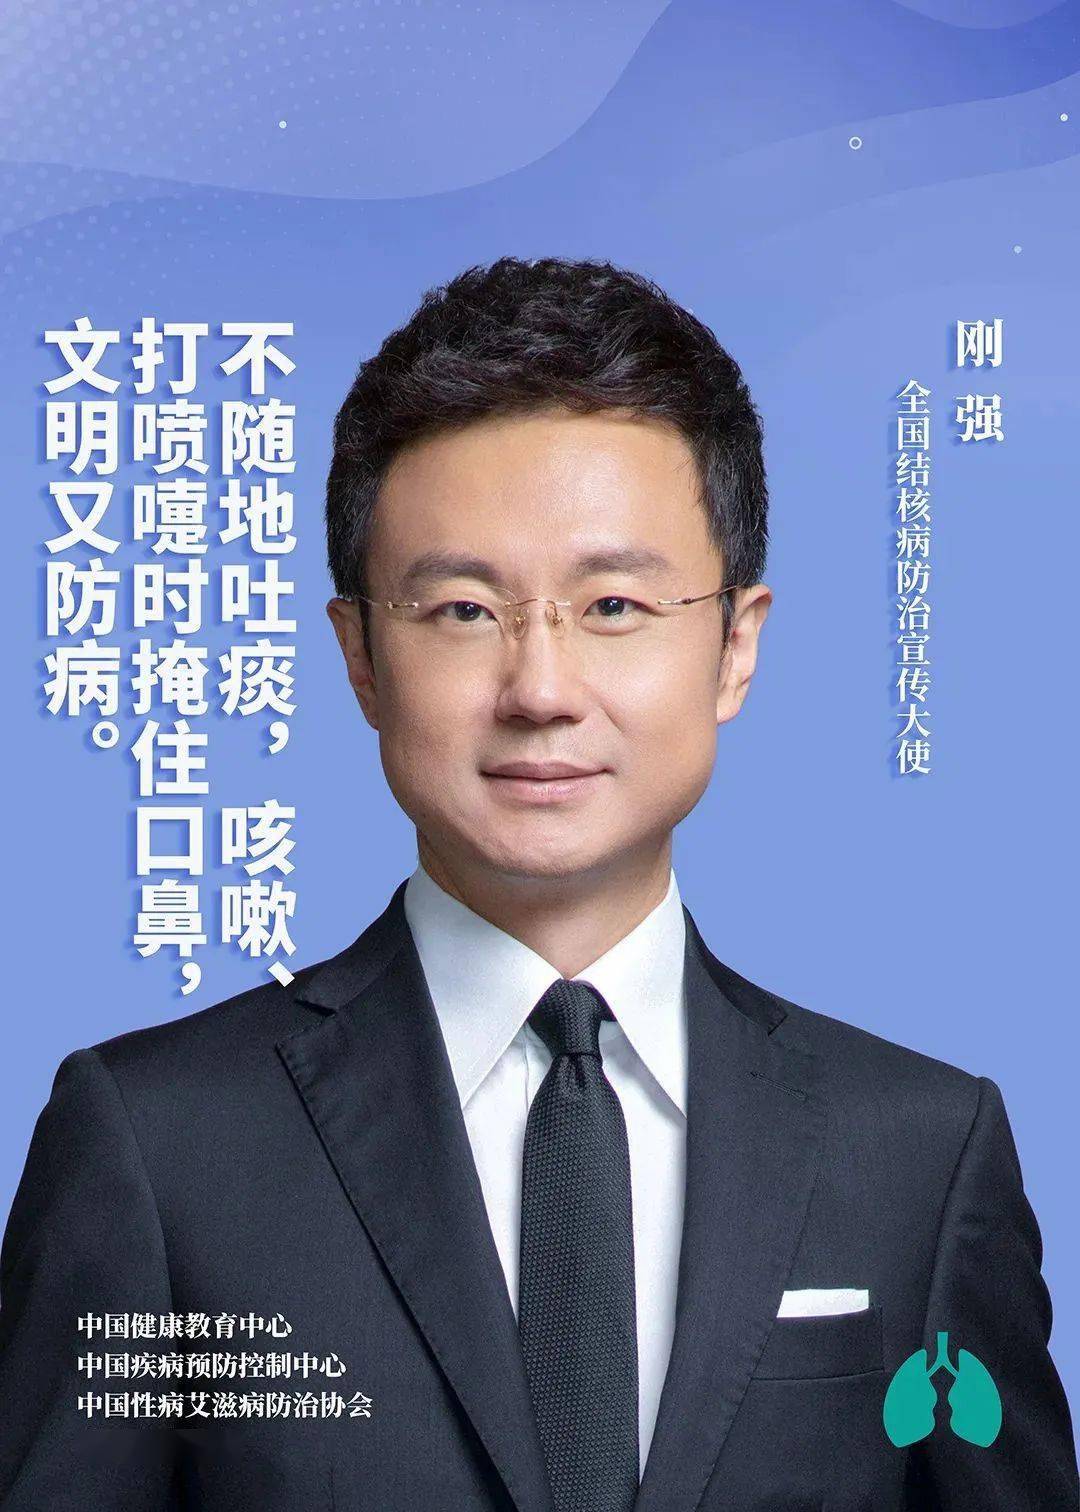 刘婧|最新宣传九宫格 全国结核病防治宣传大使齐上阵！